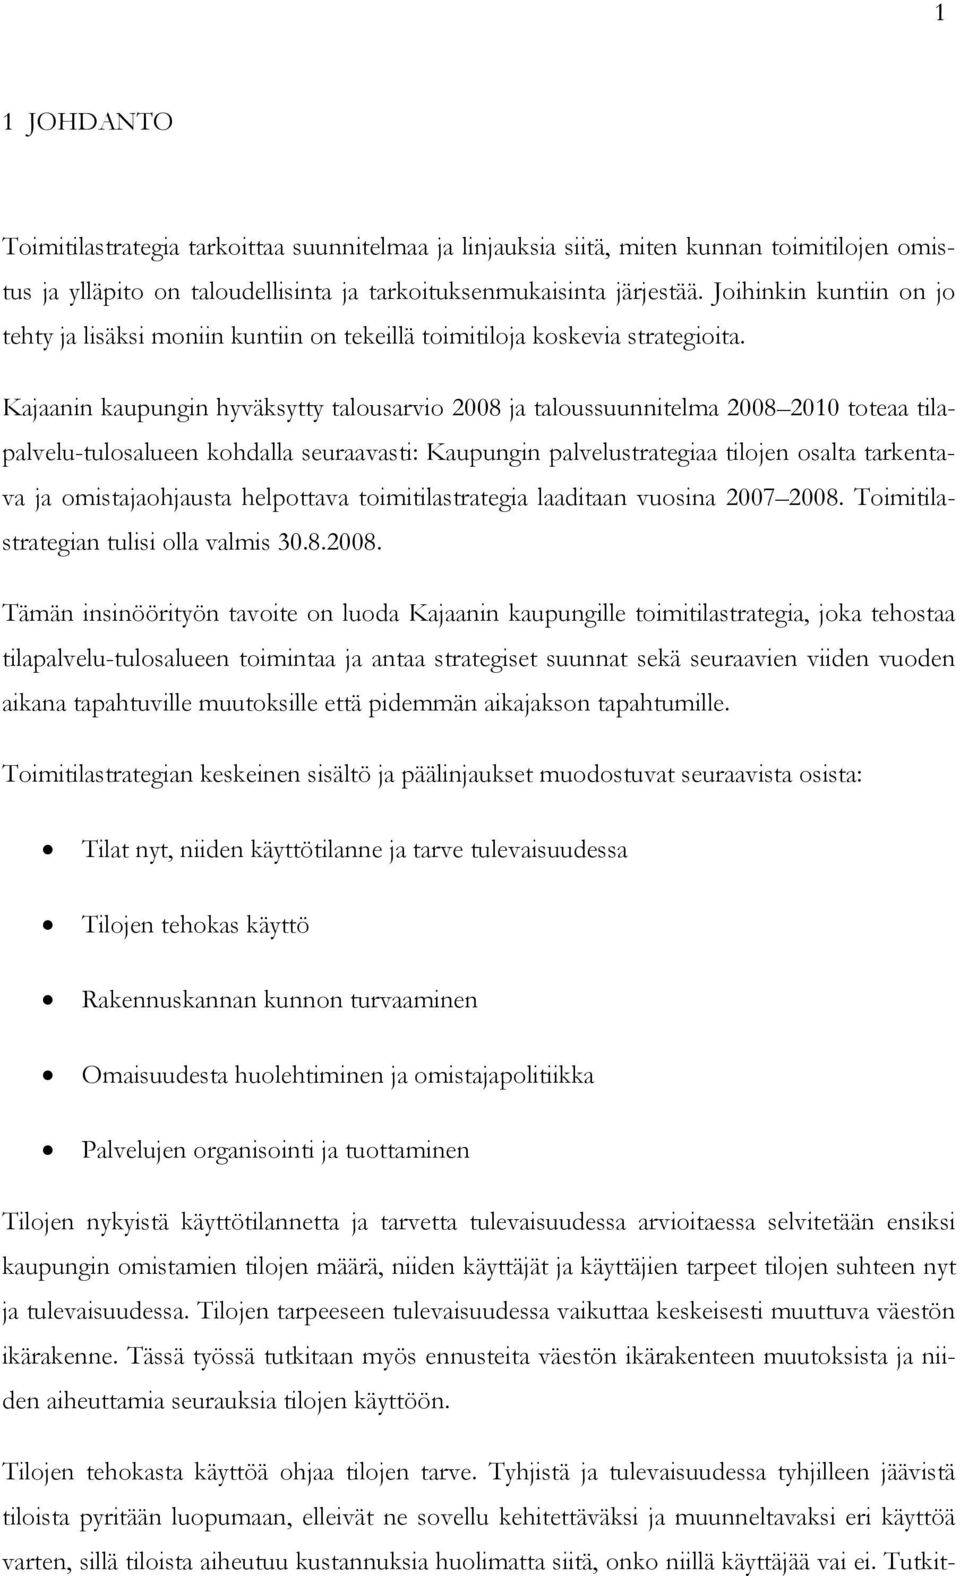 Kajaanin kaupungin hyväksytty talousarvio 2008 ja taloussuunnitelma 2008 2010 toteaa tilapalvelu-tulosalueen kohdalla seuraavasti: Kaupungin palvelustrategiaa tilojen osalta tarkentava ja